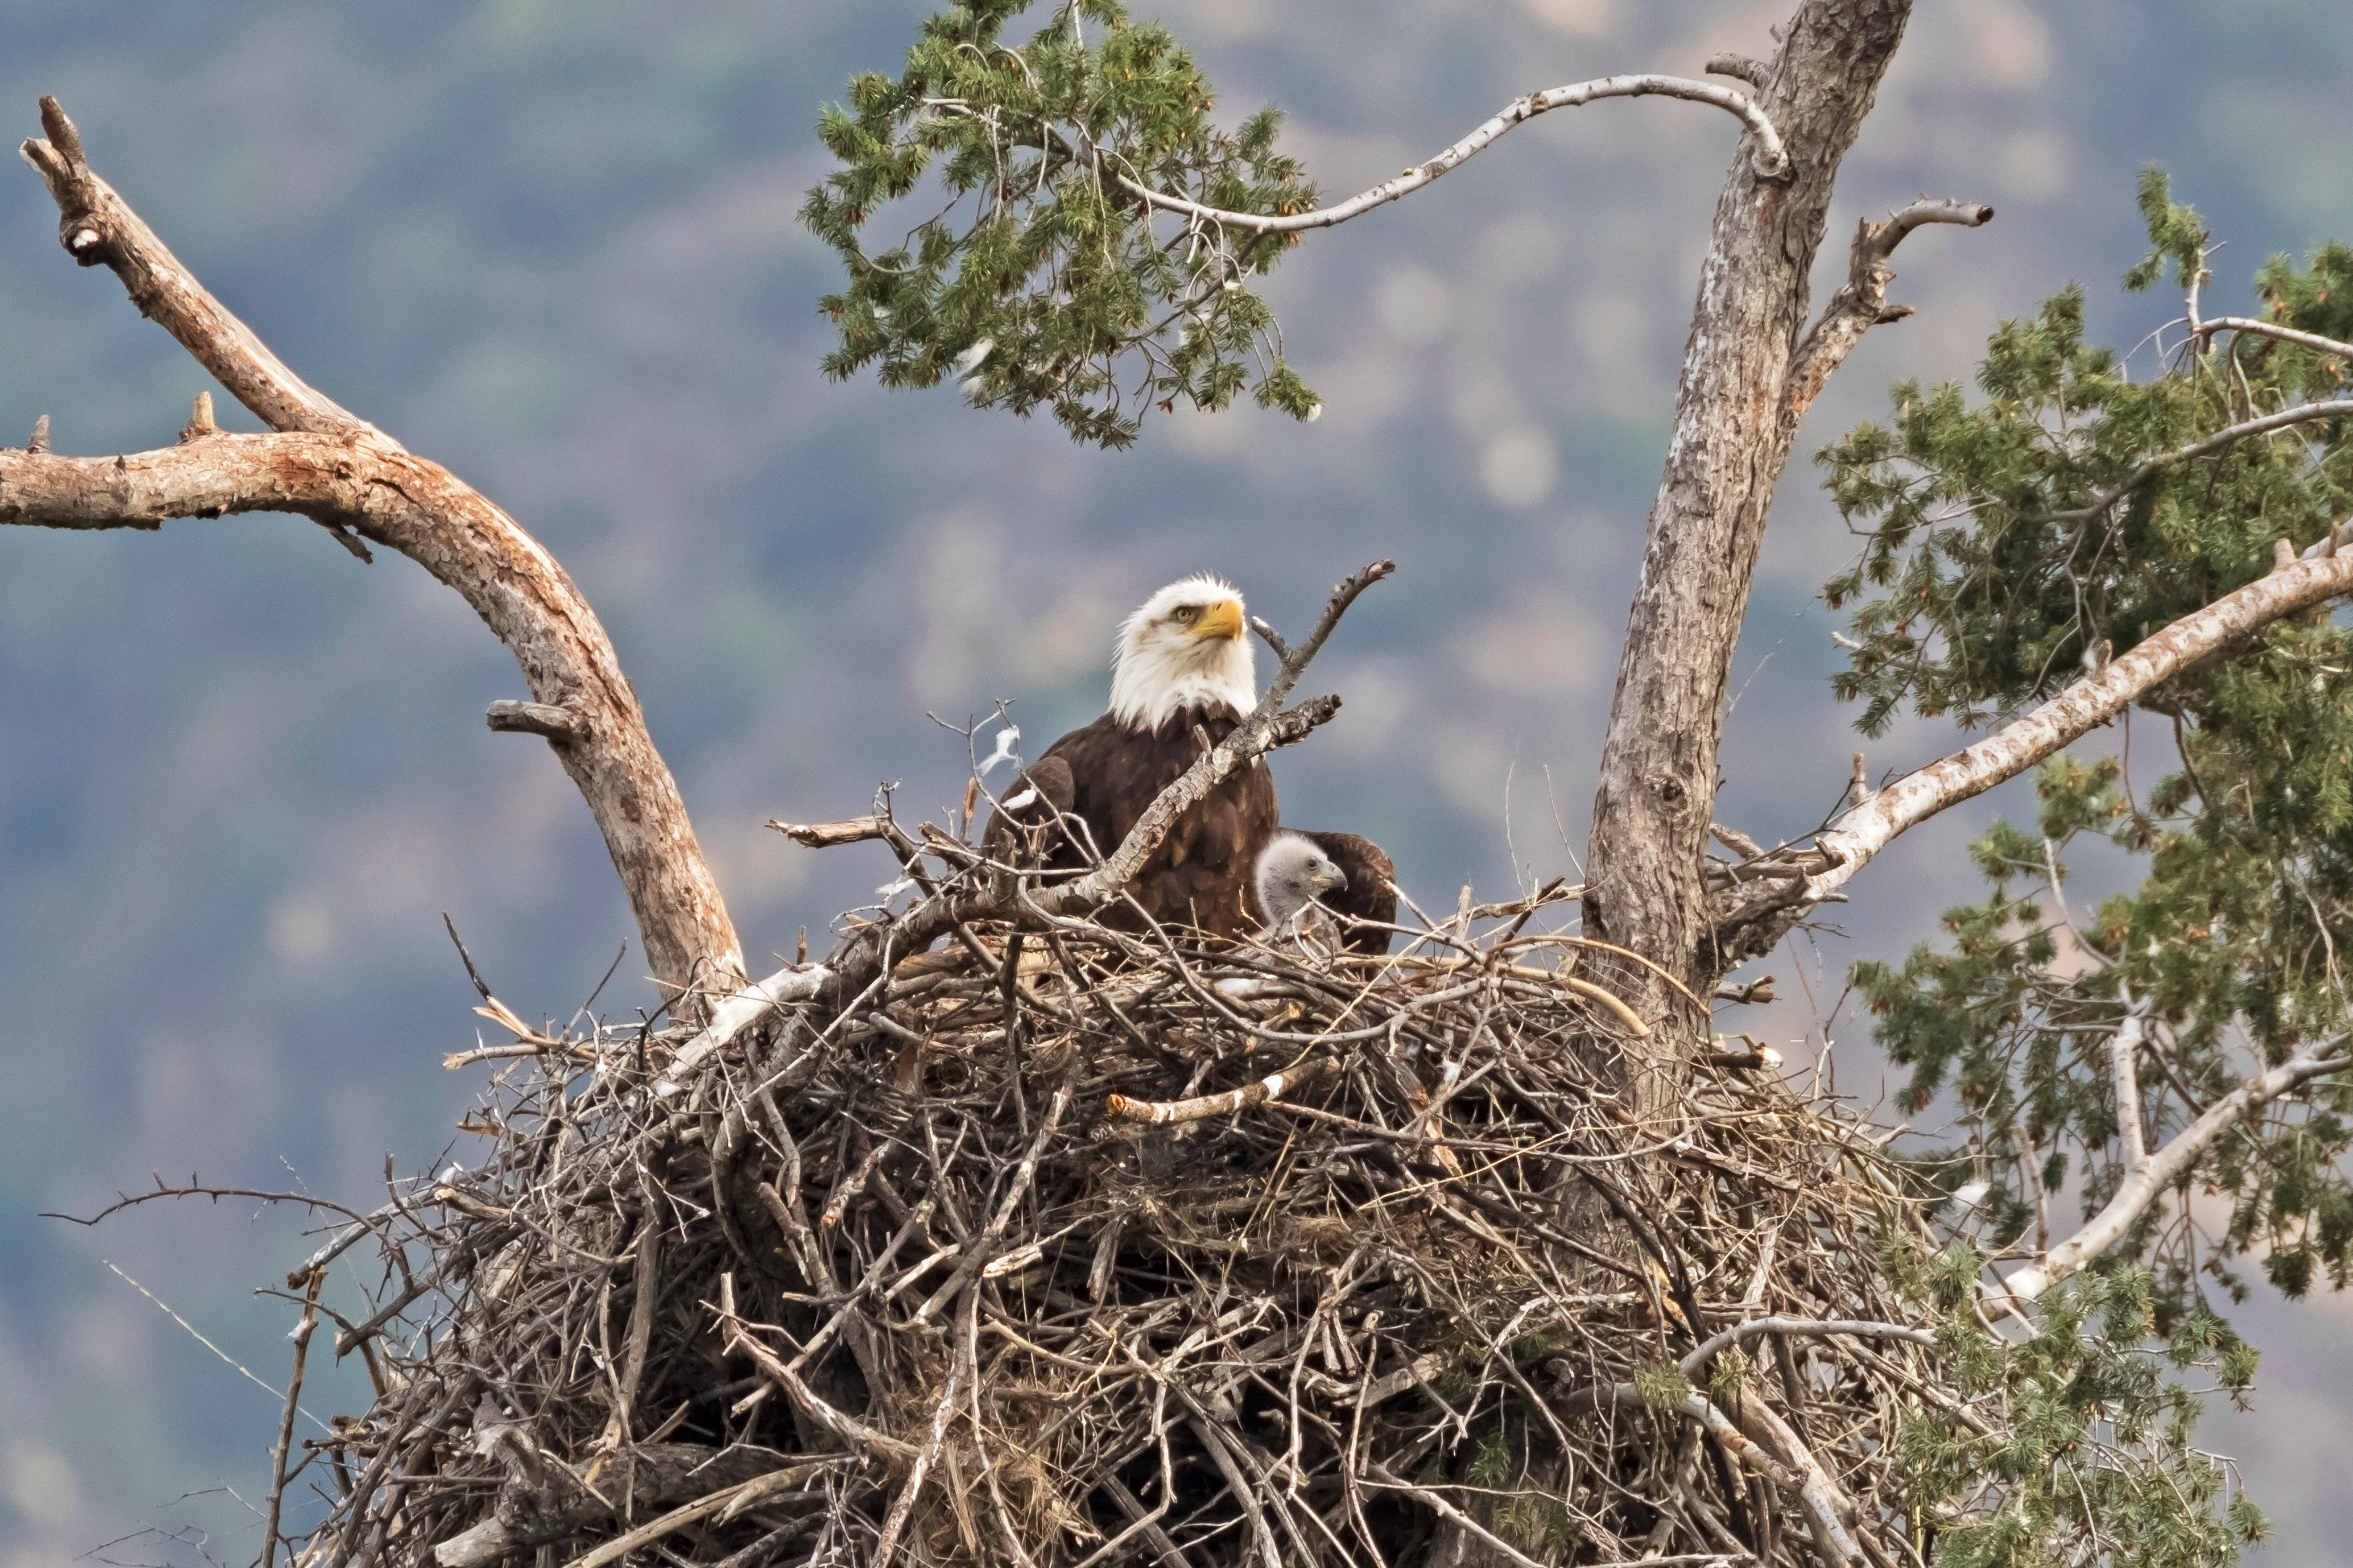 wildlifepage_eagle-1.jpg